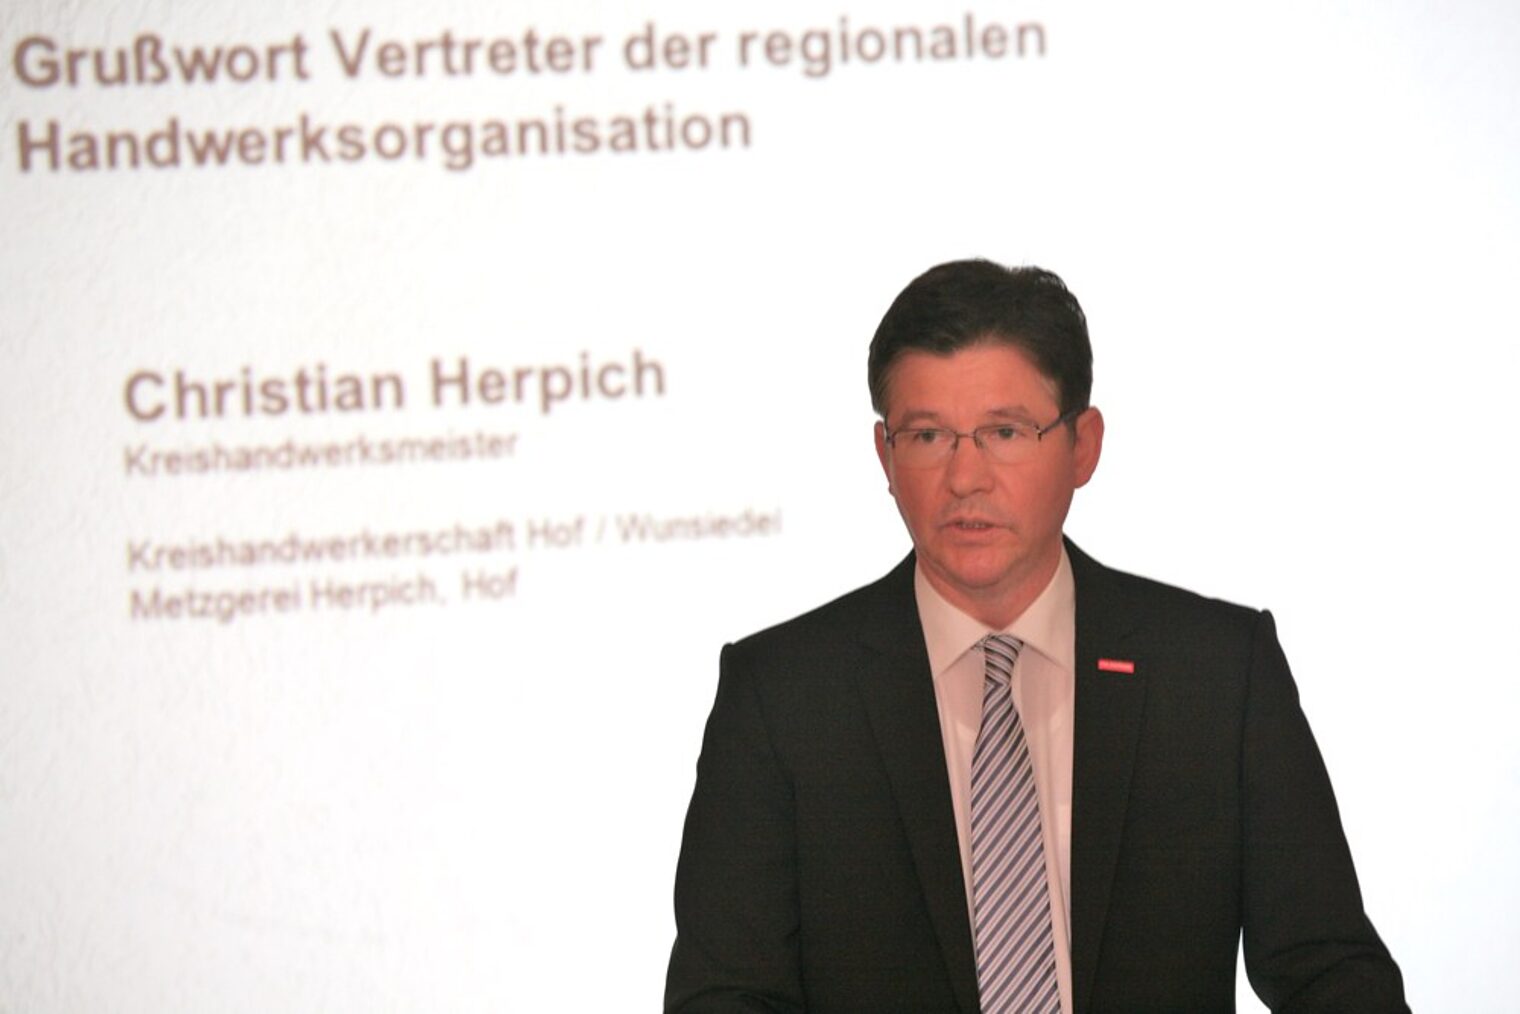 Christian Herpich, Kreishandwerksmeister